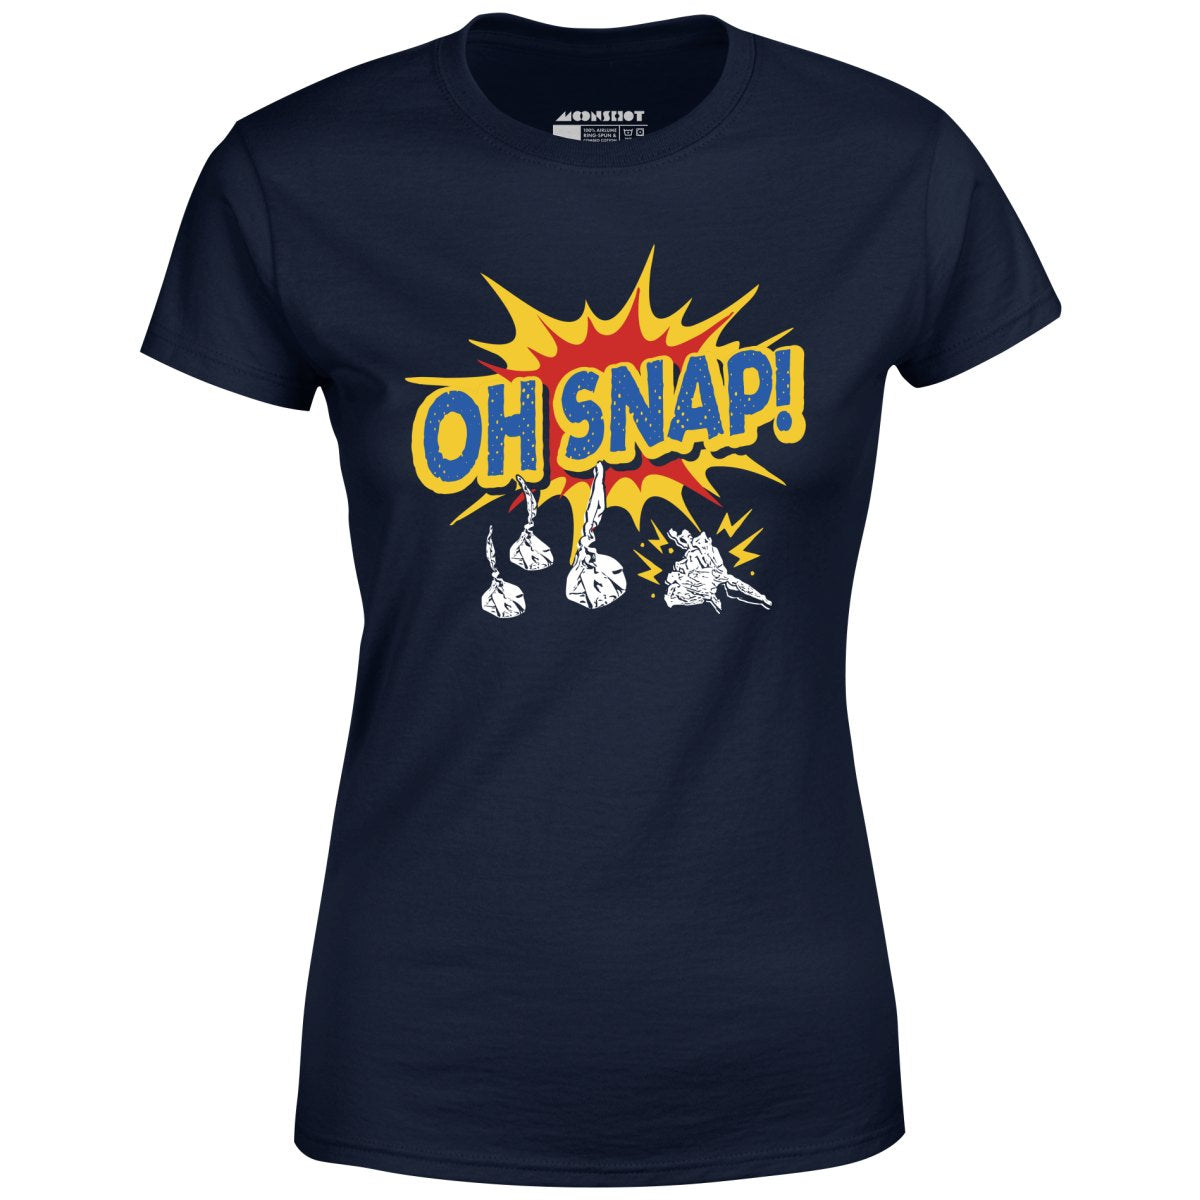 Oh Snap! - Women's T-Shirt